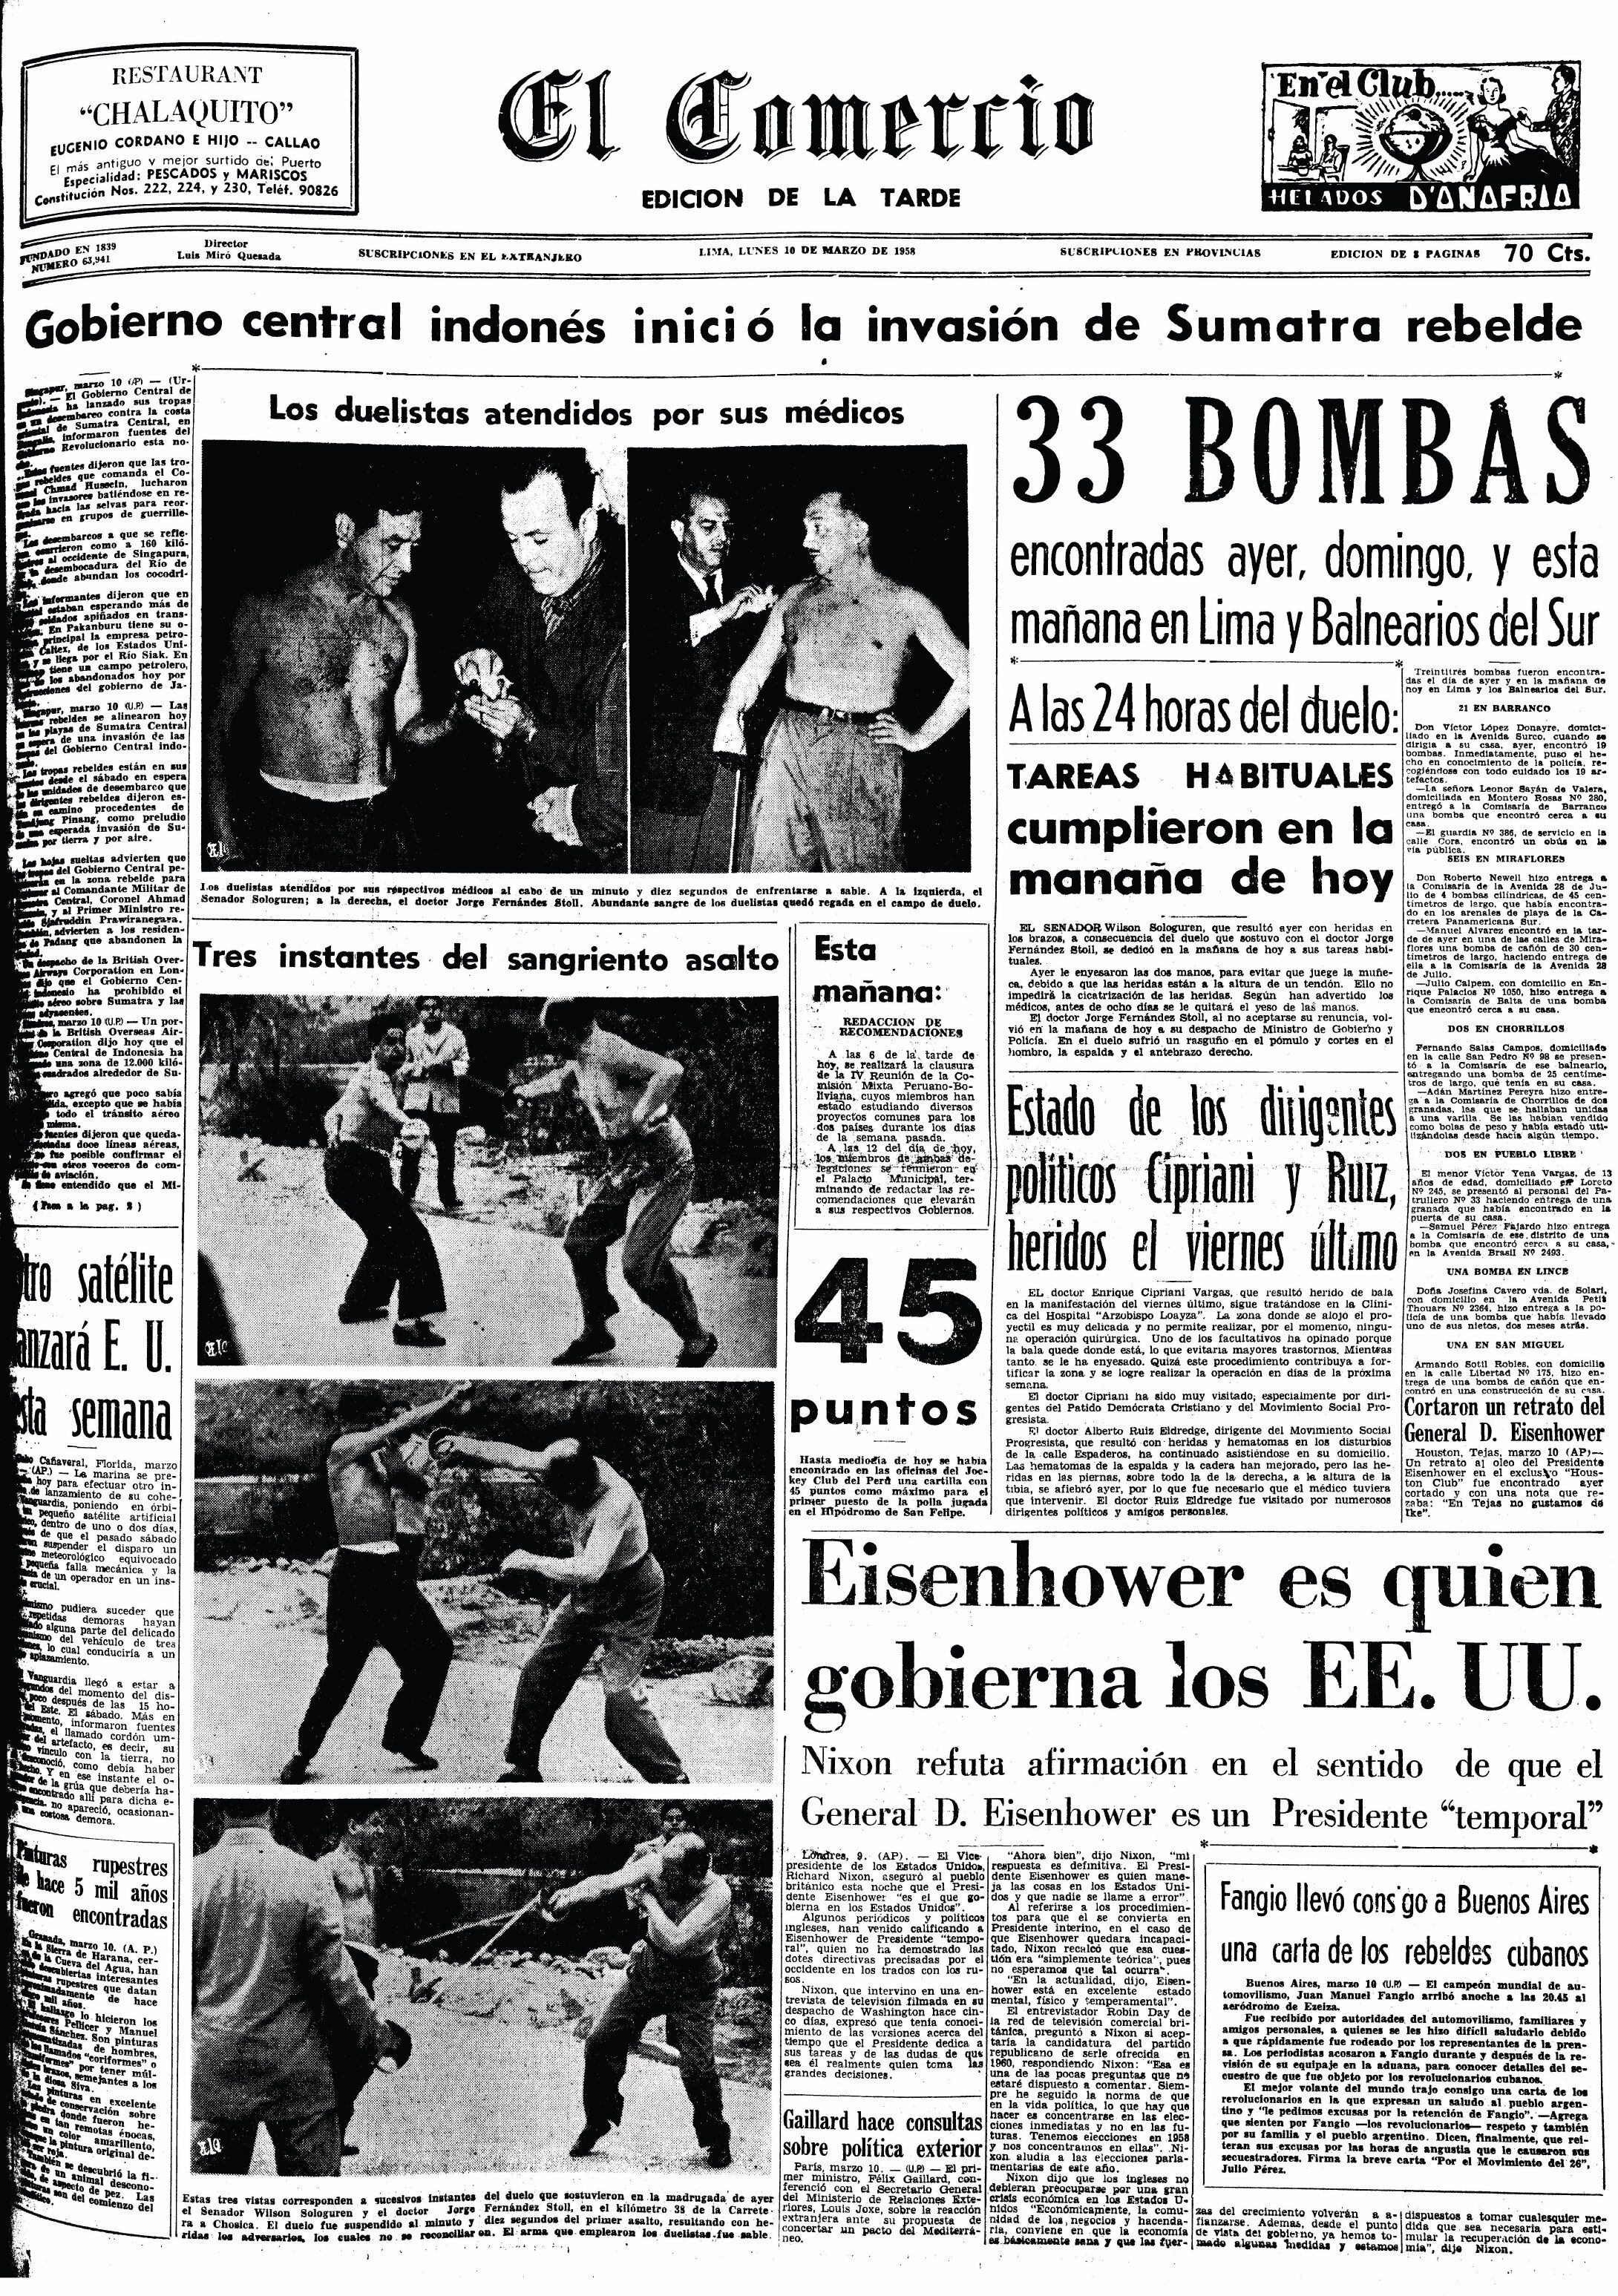 El Comercio publicó en primera plana las fotografías del asalto. (Fuente: Archivo Histórico El Comercio)